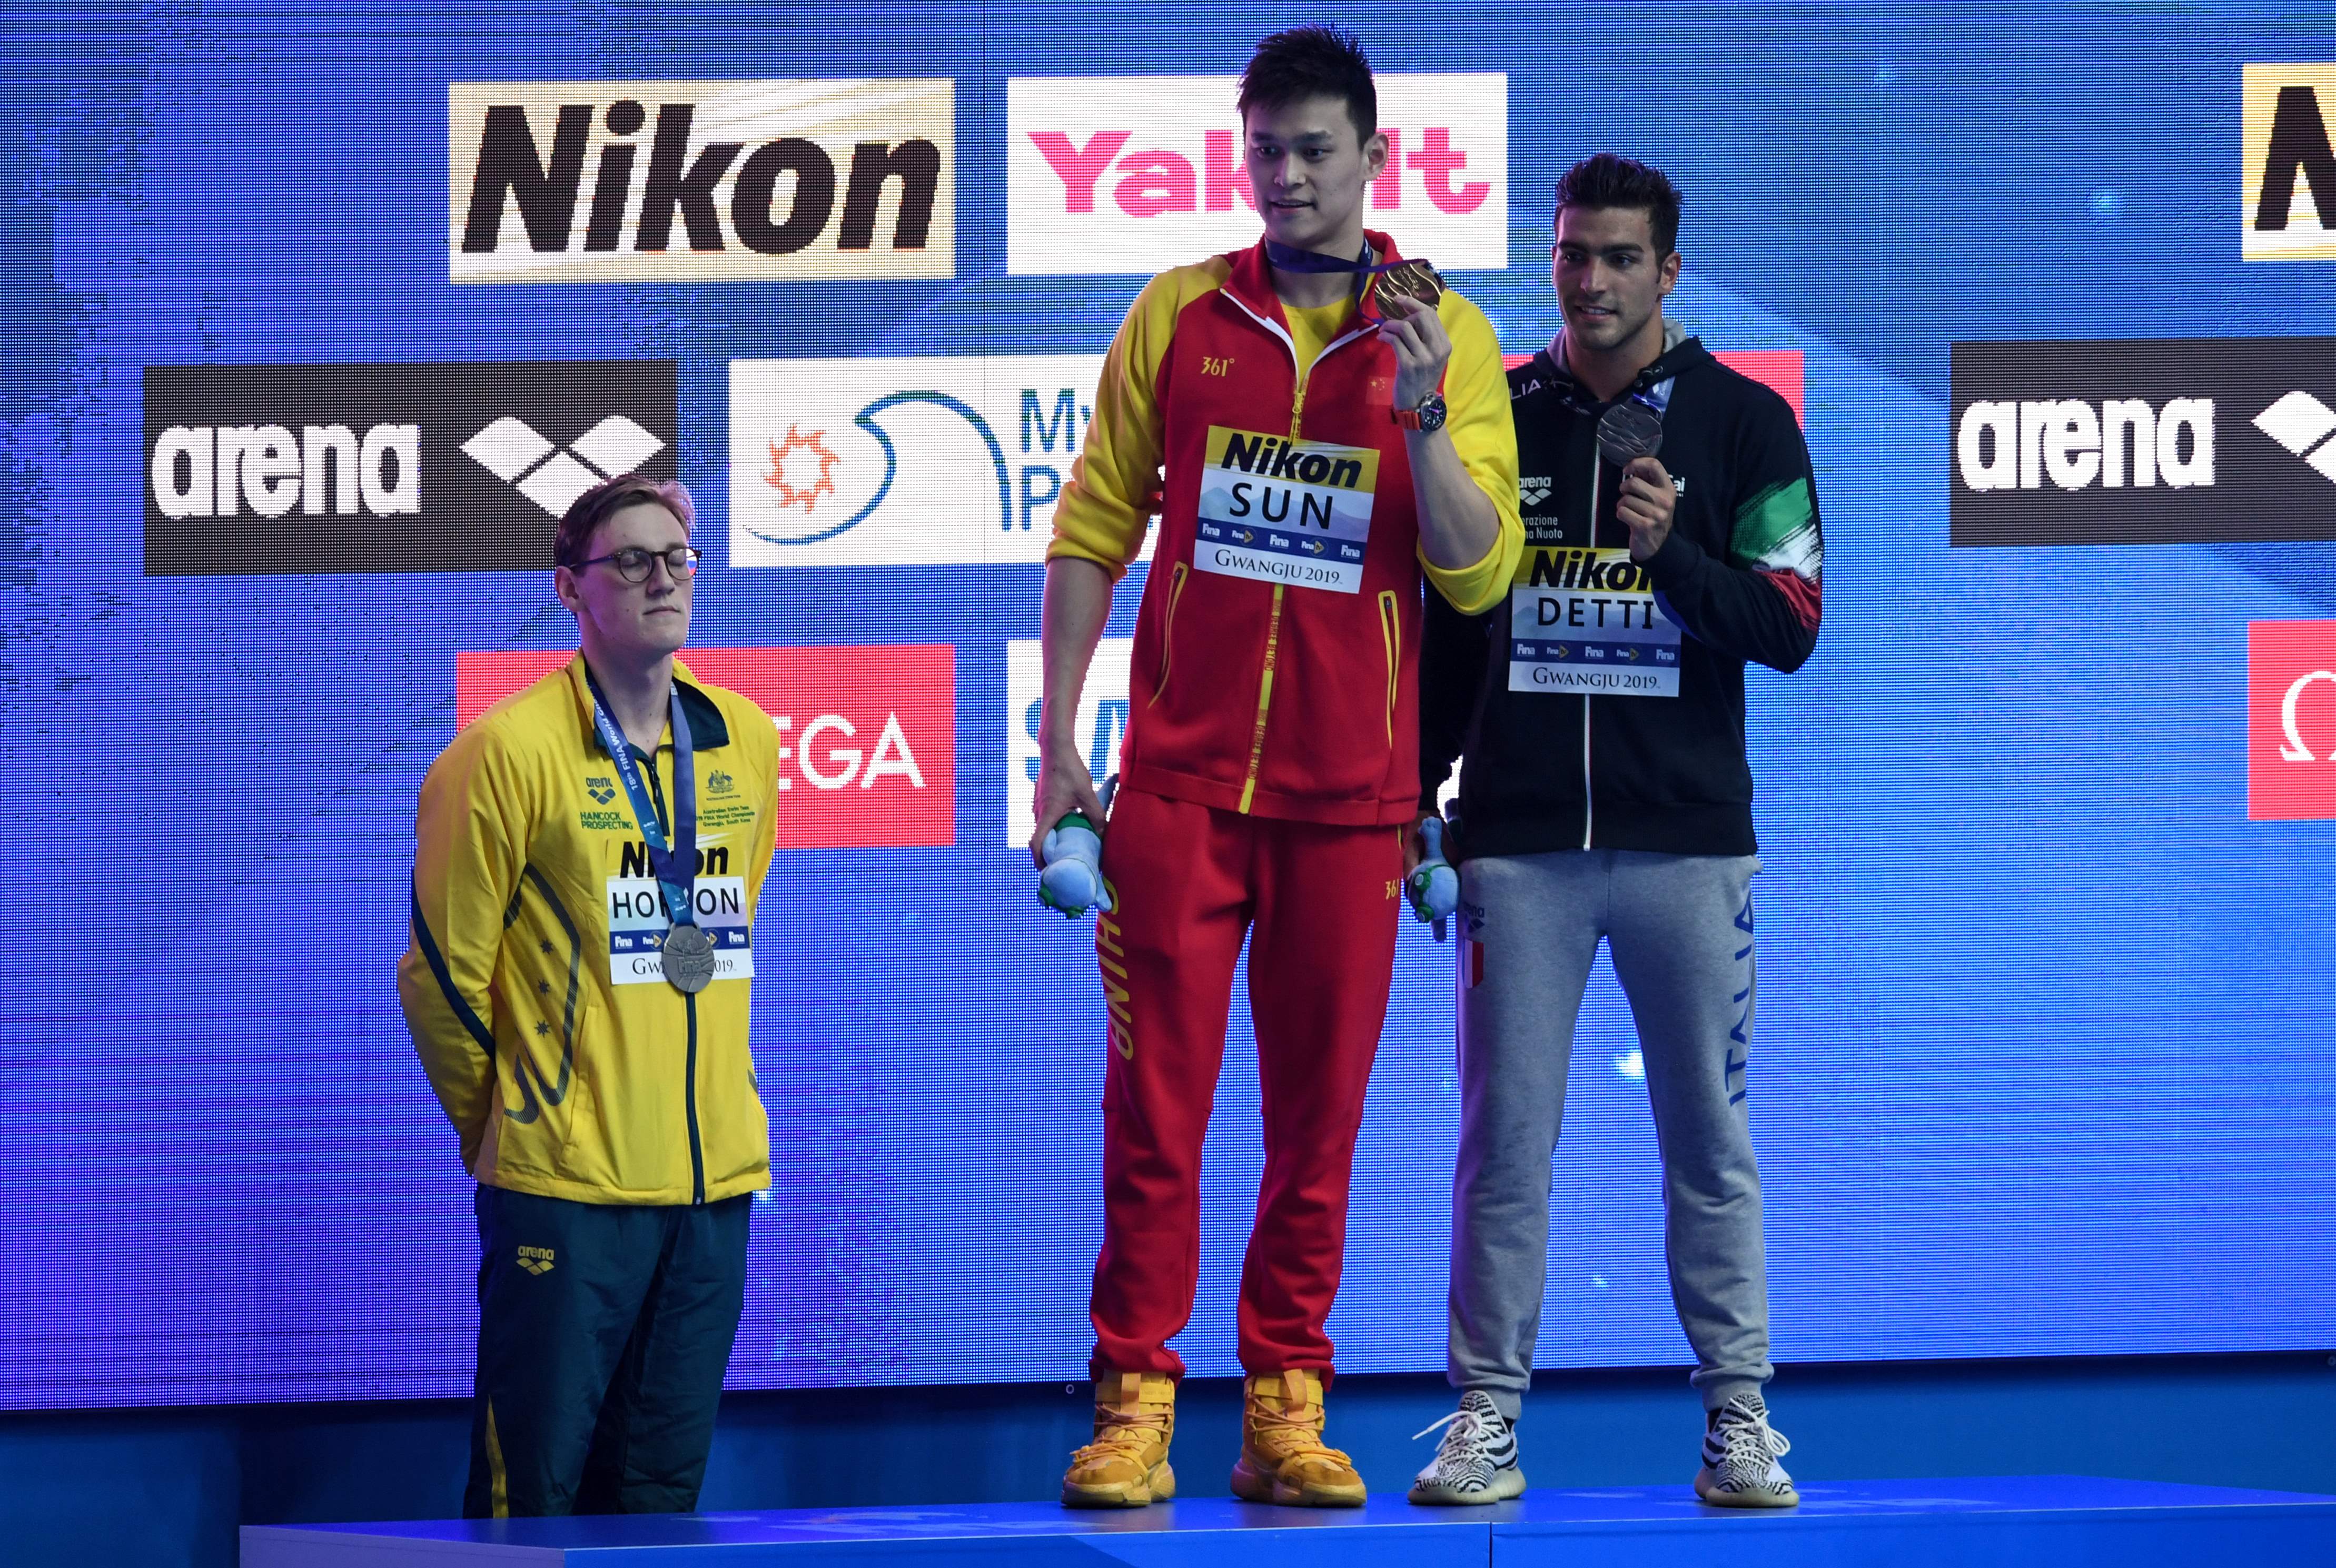 Az ausztrál úszó nem volt hajlandó felállni a dobogóra a doppinggyanúba keveredett kínai versenyző mellé